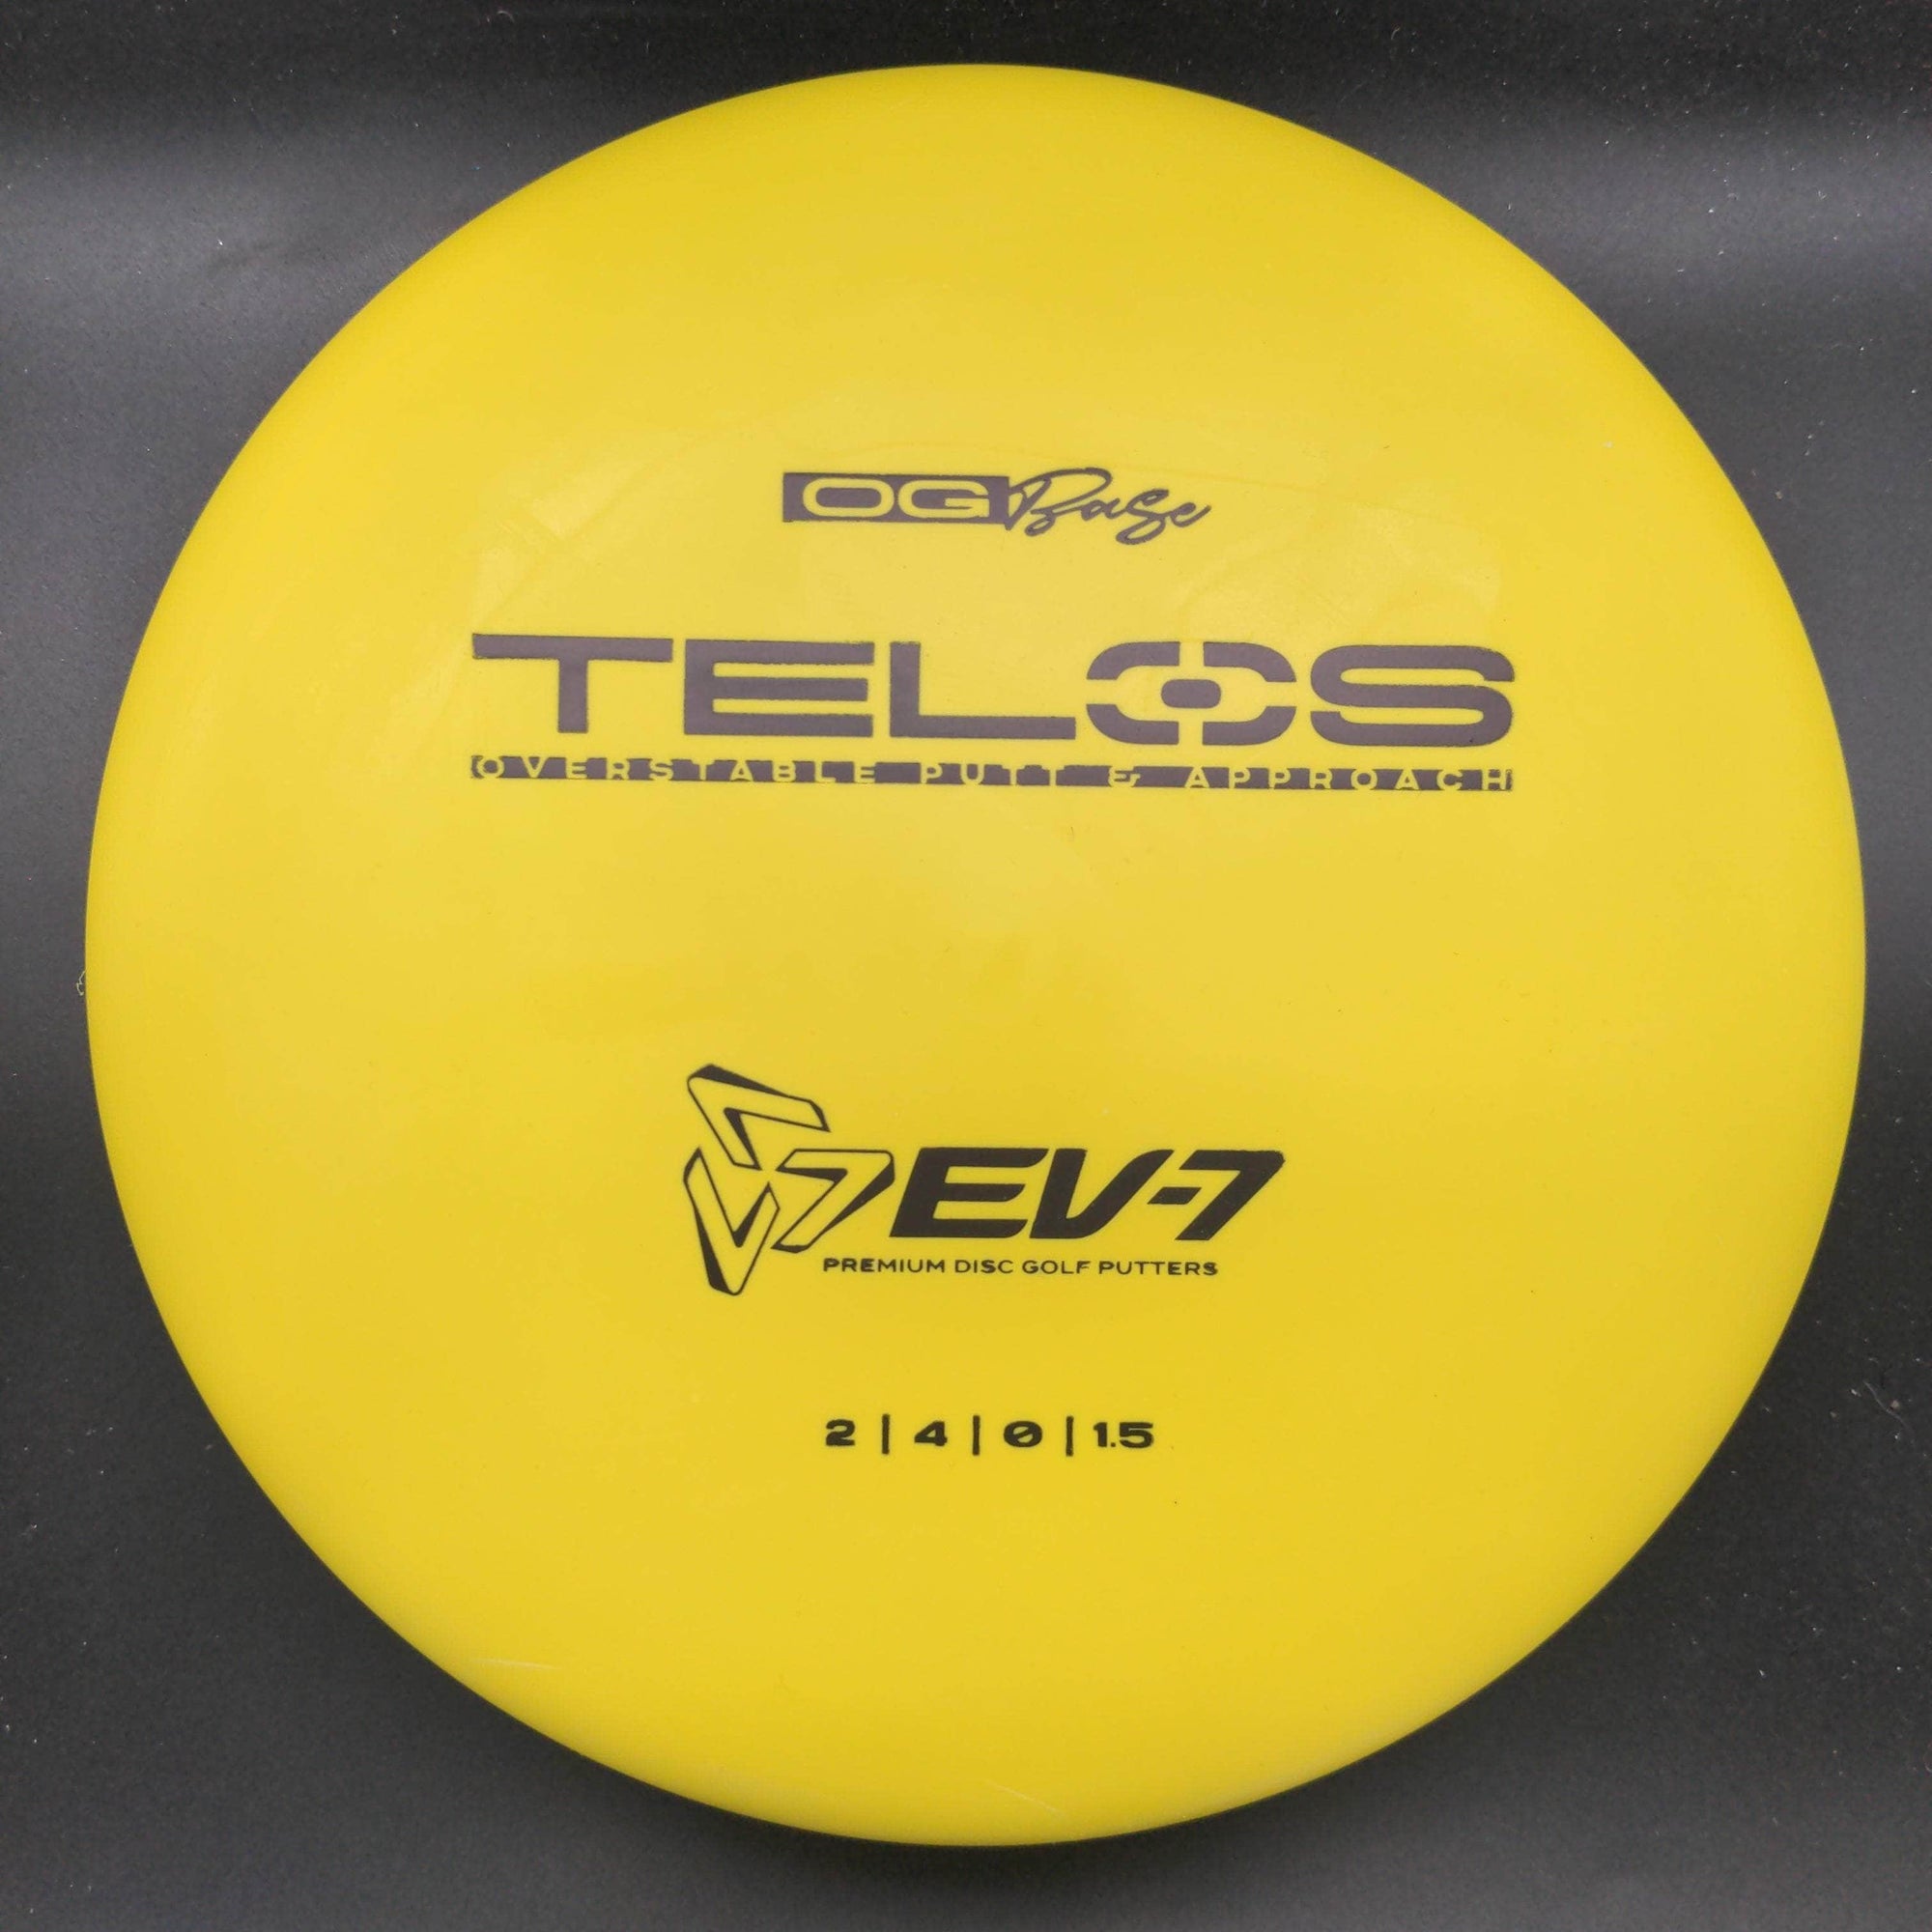 Ev7 Putter Yellow Black Stamp 173g Telos, OG Base Putter